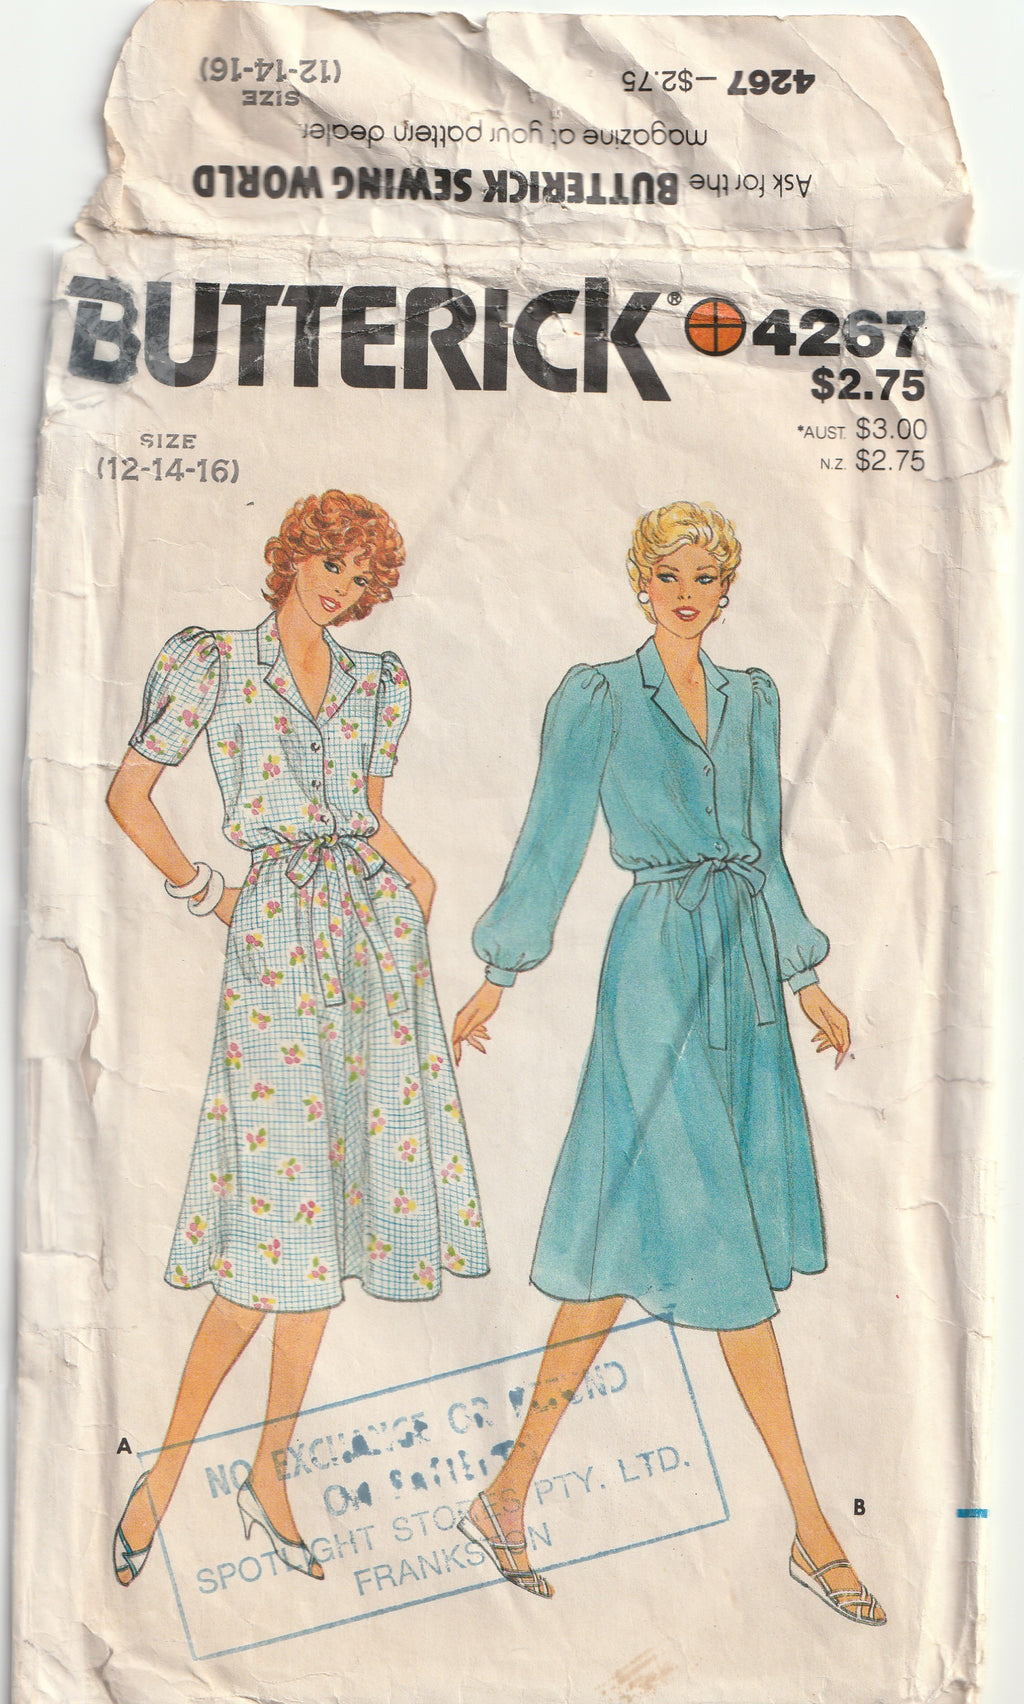 1980s vintage sewing pattern shirtwaist dress butterick 4267 Medium